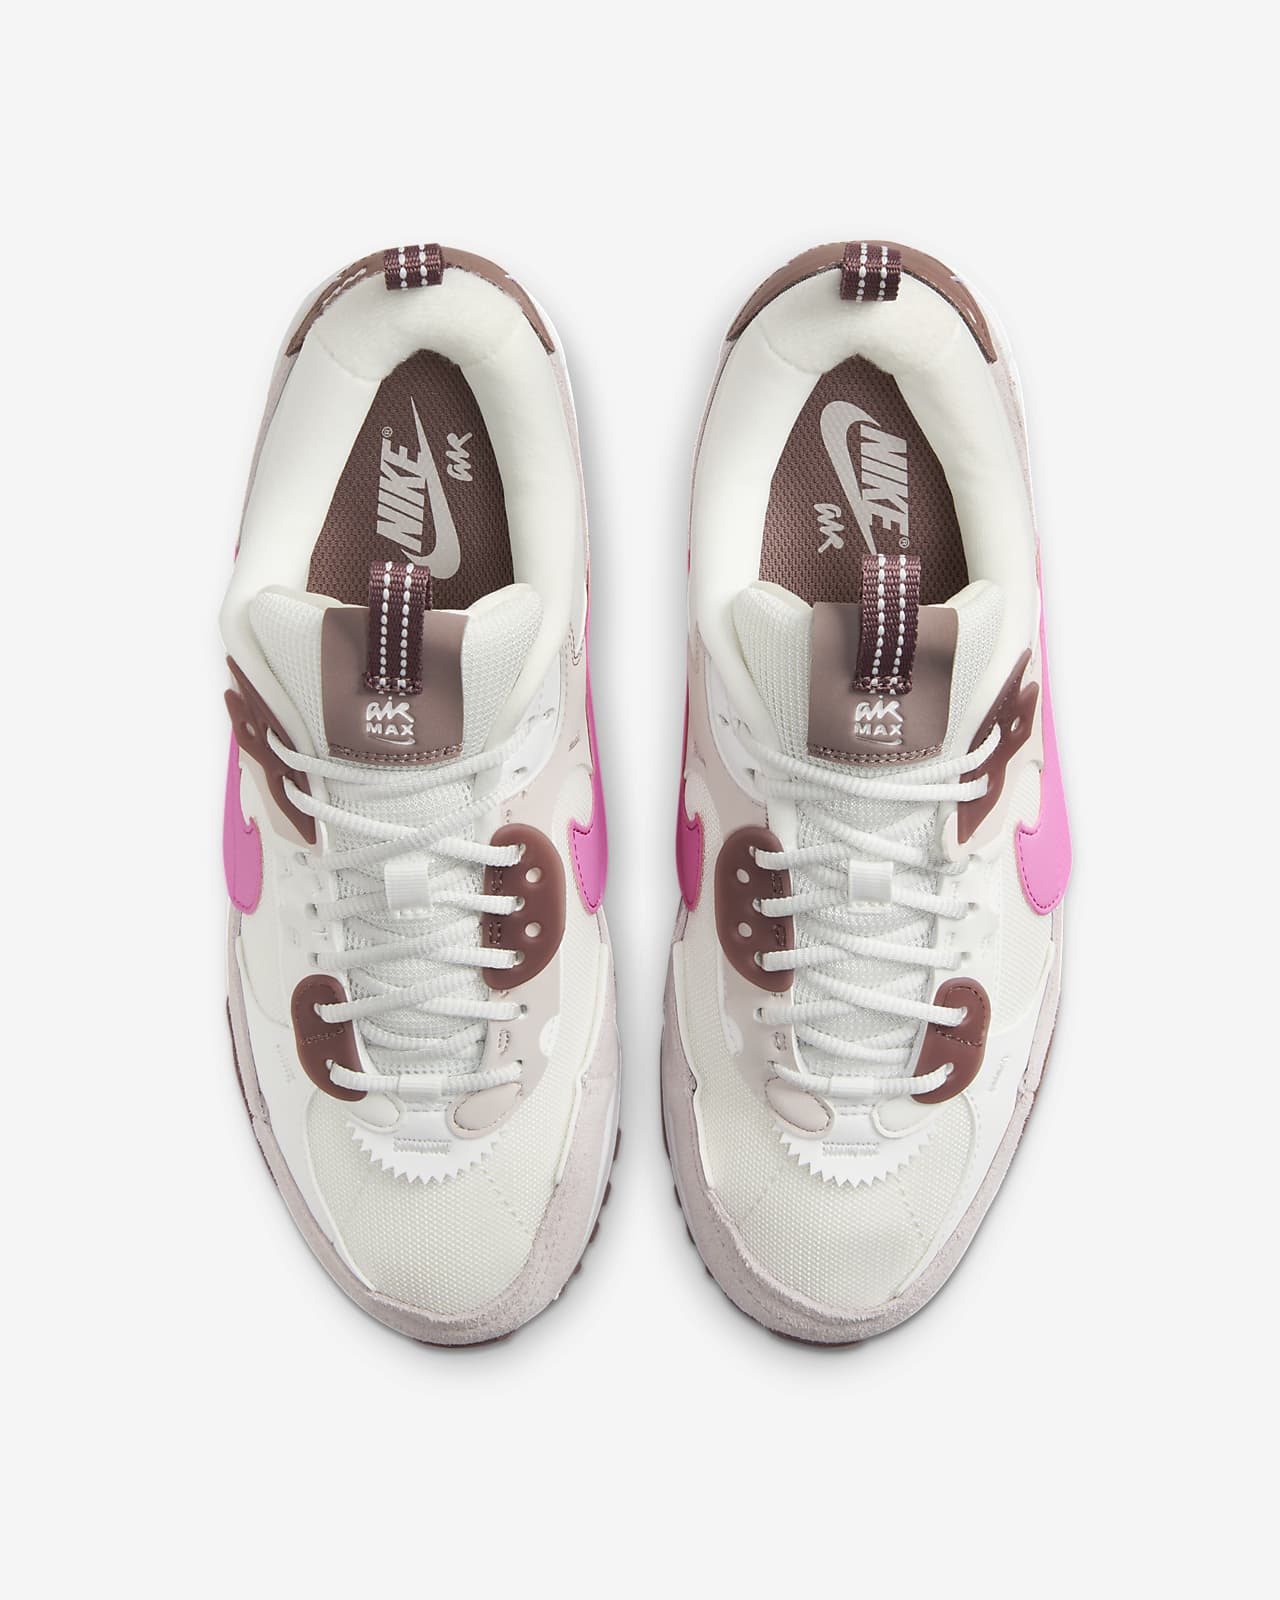 El outlet de Nike salda las zapatillas Air Max 90 para mujer con